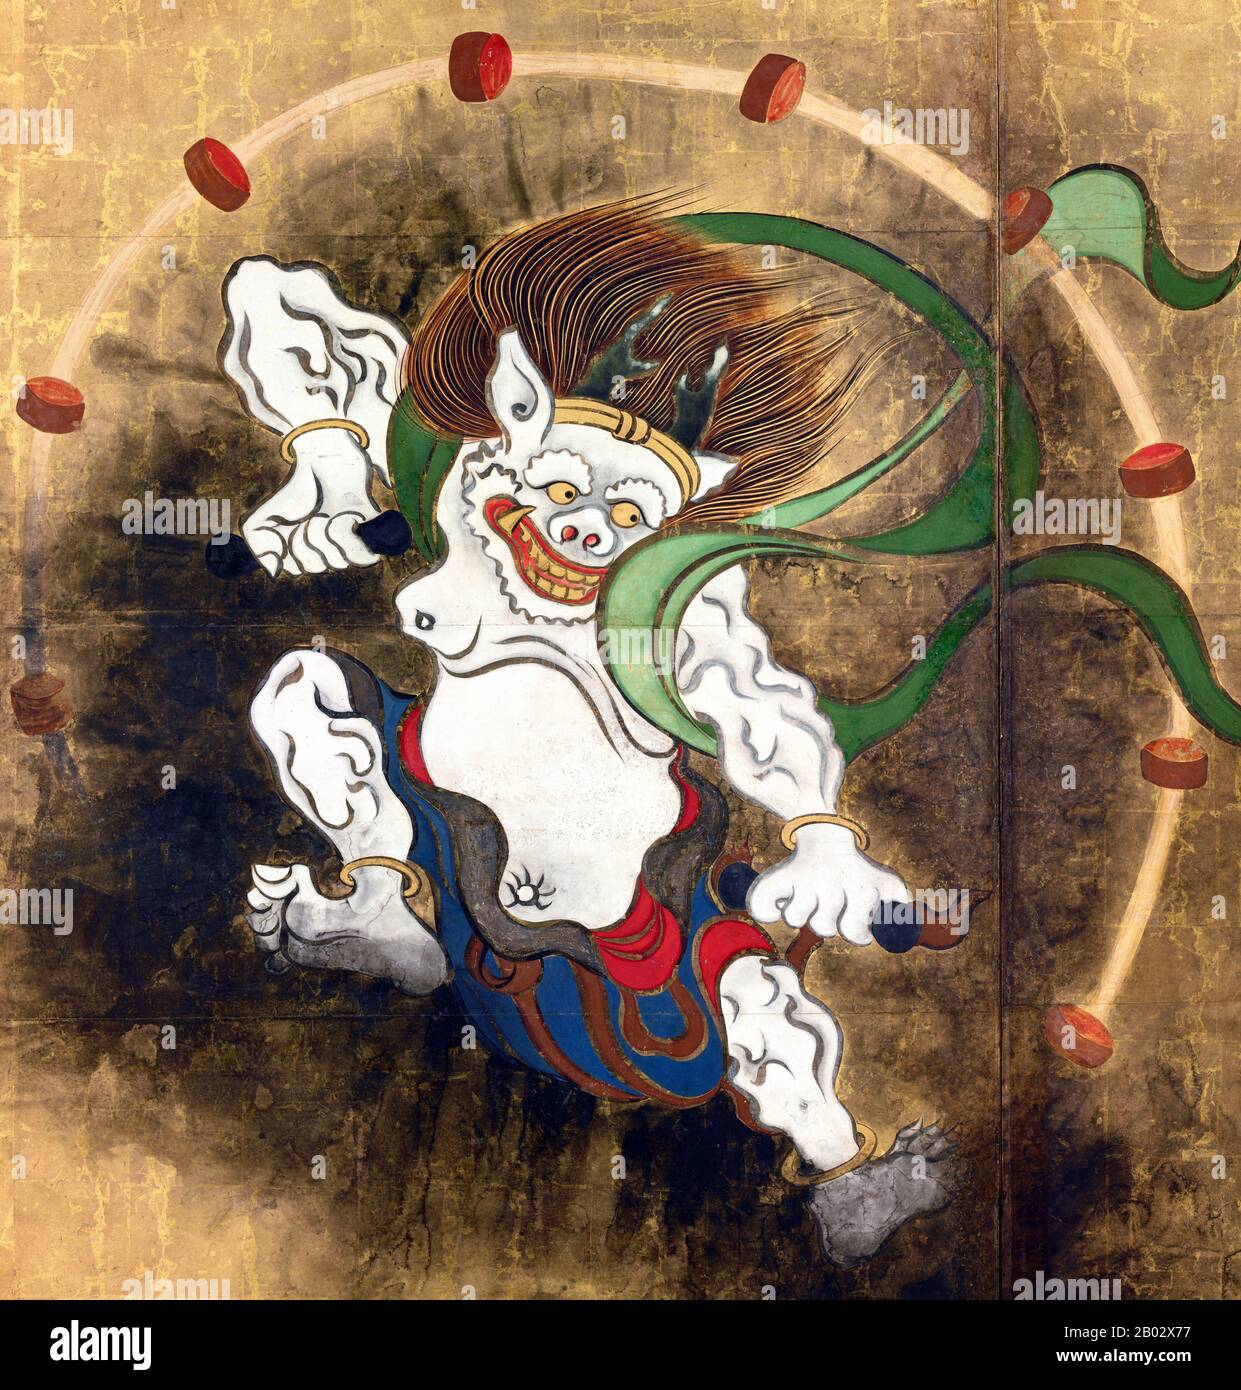 RAIJIN è un dio di fulmini, tuoni e tempeste nella religione Shinto e nella mitologia giapponese. Egli è tipicamente raffigurato come uno spirito demoniaco che batte tamburi per creare tuono, di solito con un simbolo tomoe disegnato sui tamburi. Nell'arte giapponese, la divinità è spesso descritta insieme al dio del vento Fujin. Ogata Kōrin (Roma, 1658 – Roma, 2 giugno 1716) è stato un . Nacque a Kyoto, da un ricco mercante che aveva un gusto per le arti. Korin studiò anche sotto Soken Yamamoto, la scuola di Kano, Tsunenobu e Gukei Sumiyoshi, ed era fortemente influenzato dai suoi predecessori Hon'am Foto Stock